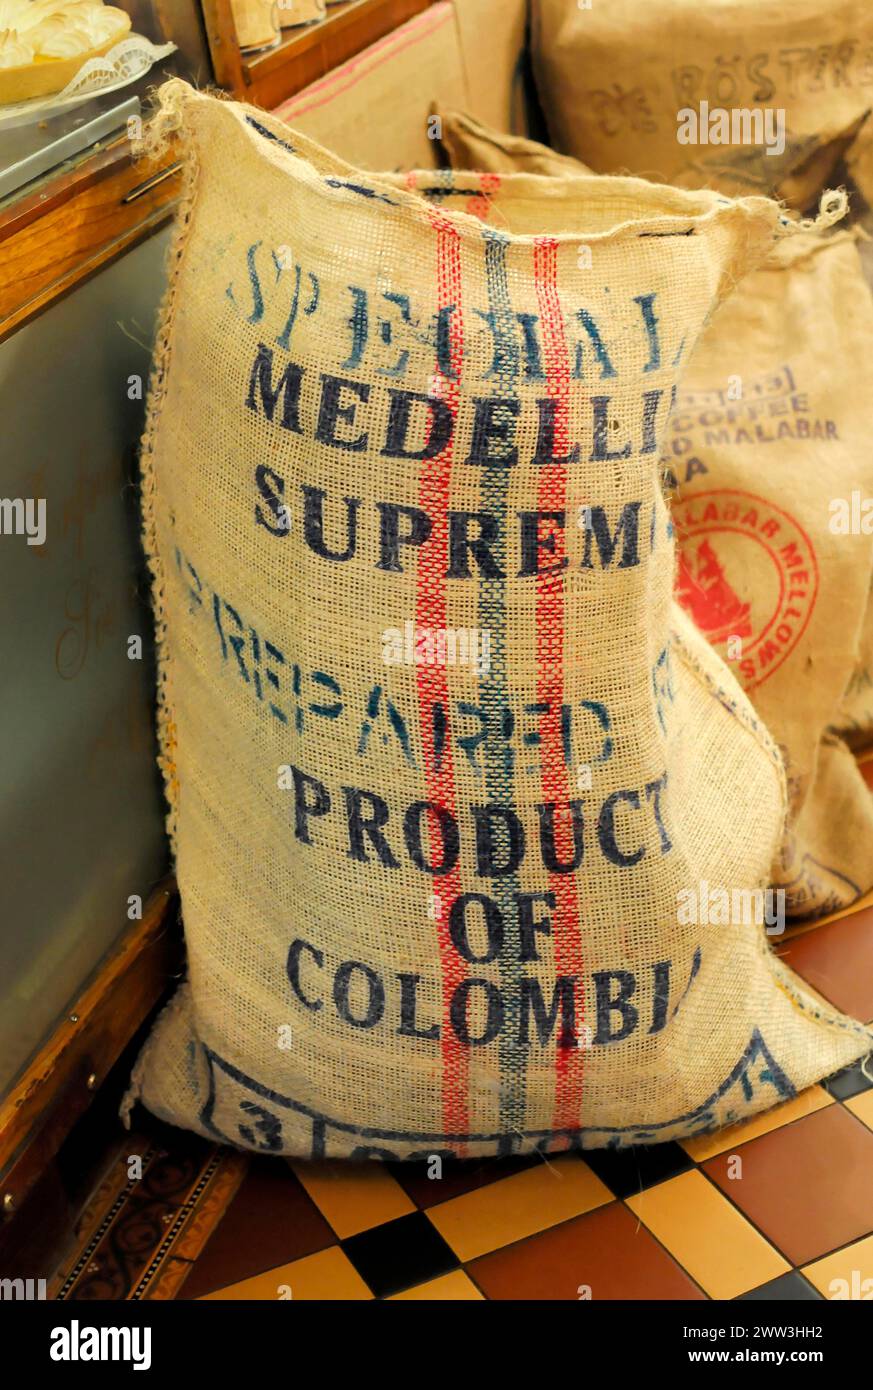 Coffee, Ein rustikaler Sack mit der Aufschrift „Medellin Supreme Product of Colombia“, vermutlich für Kaffeebohnen, Hamburg, Hansestadt Hamburg, Deutschland Stockfoto